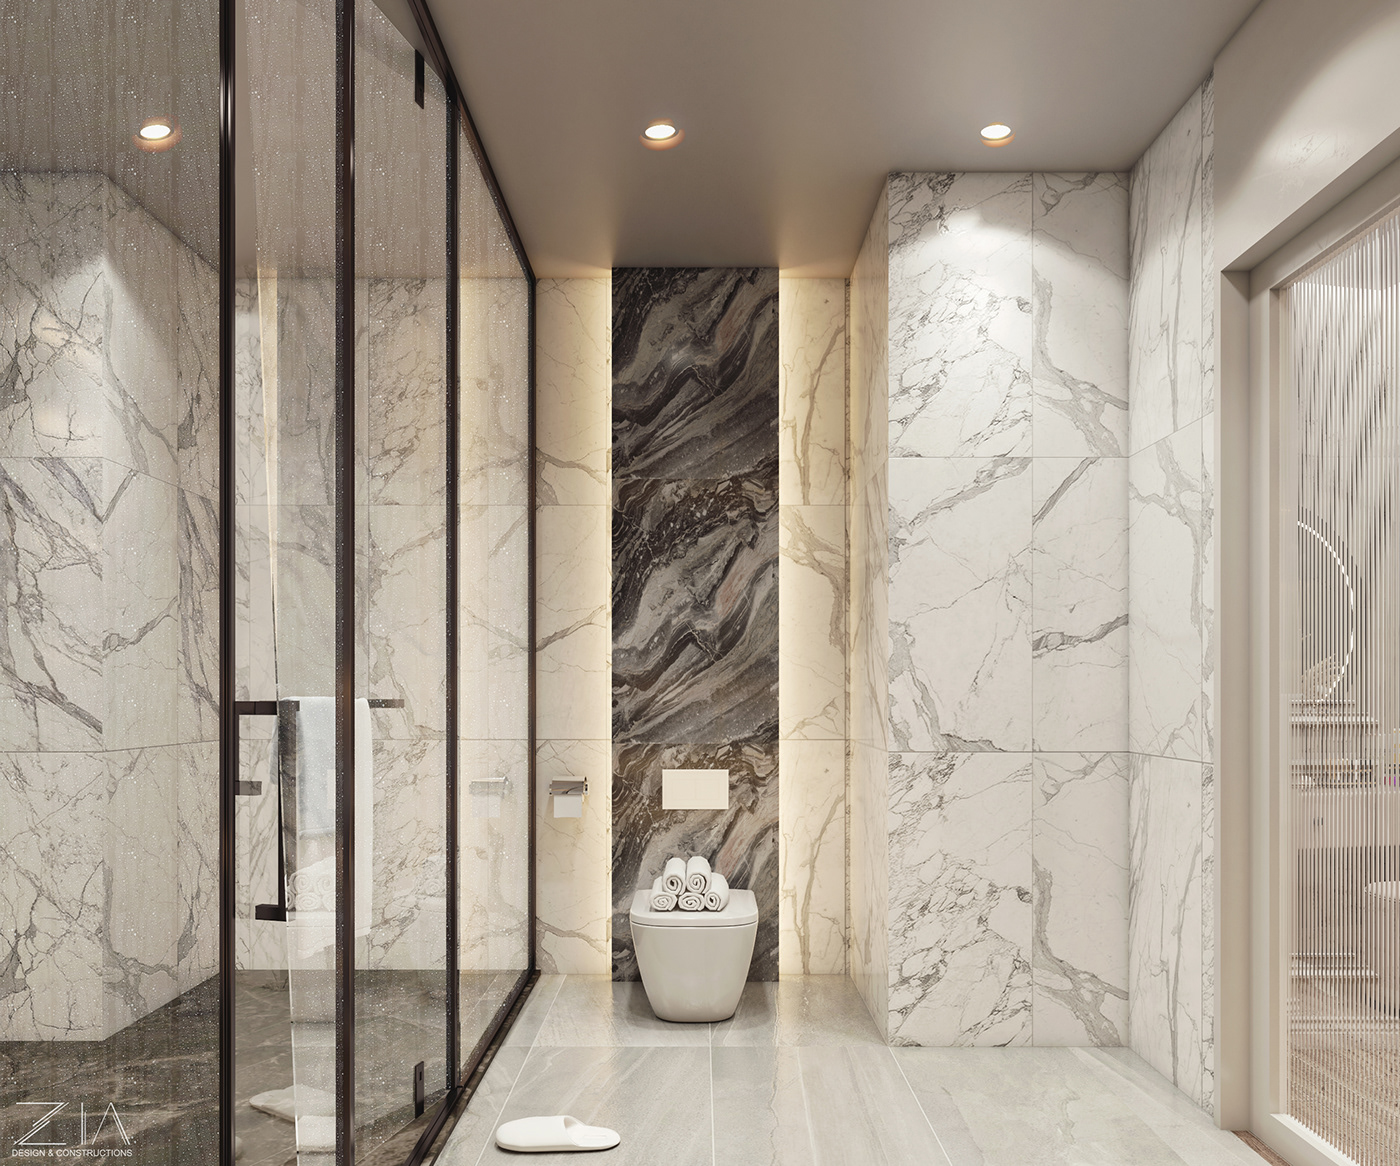 3ds max architecture bedroom Interior interior design  modern suit suite master SuiteDesign visualization